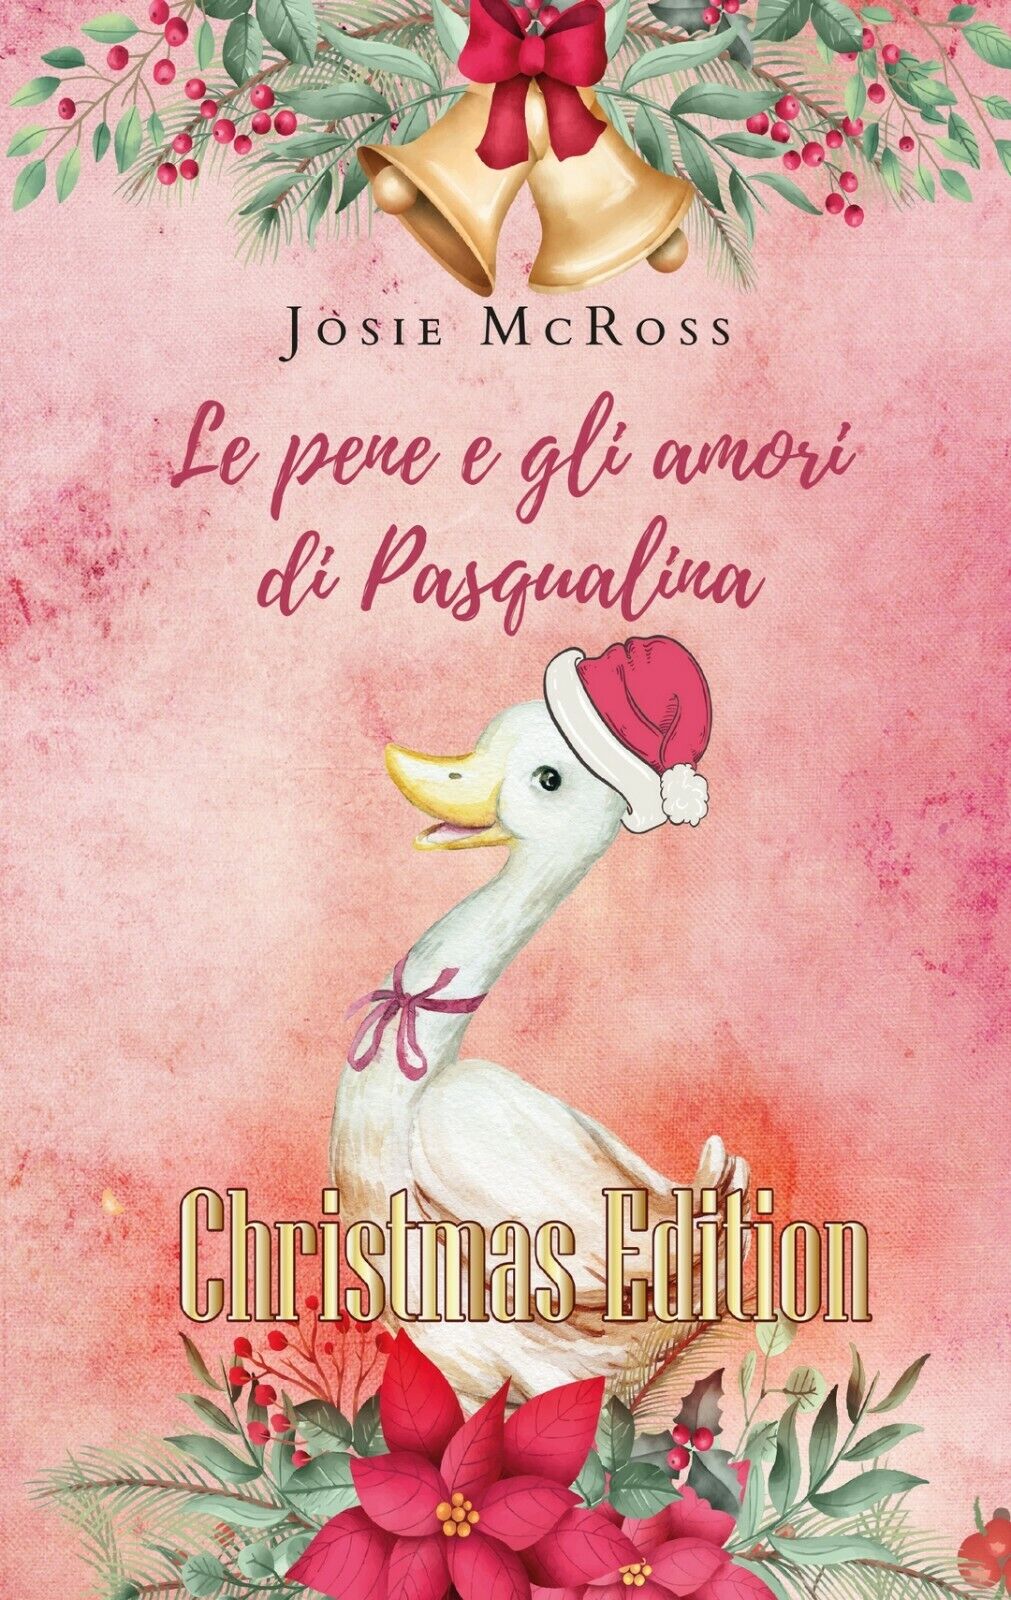 Le pene e gli amori di Pasqualina Christmas Edition  di Josie Mcross,  2019